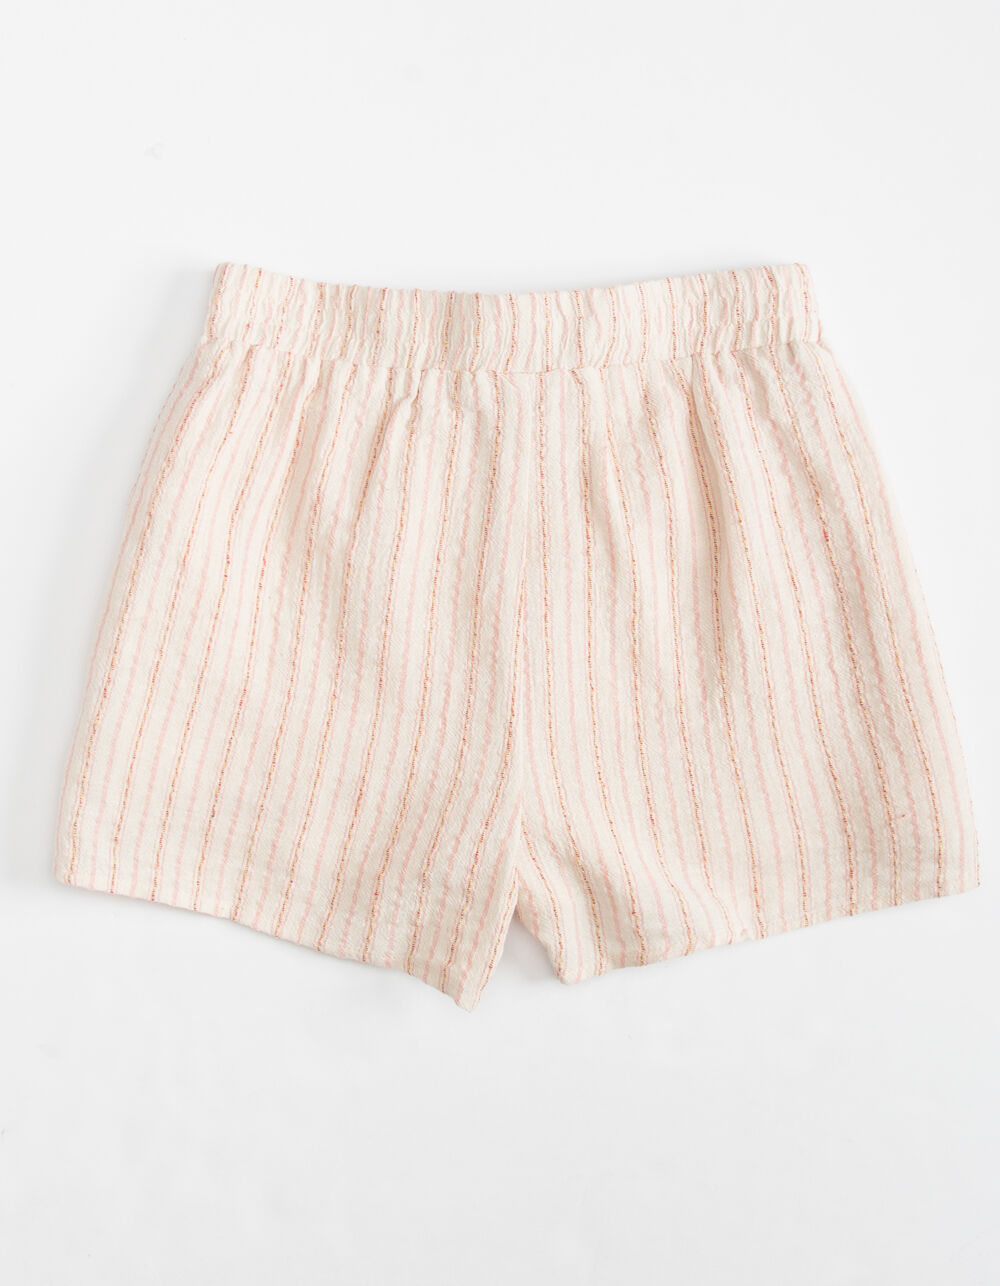 FOR ALL SEASONS Stripe Girls Shorts - CREAM COMBO | Tillys